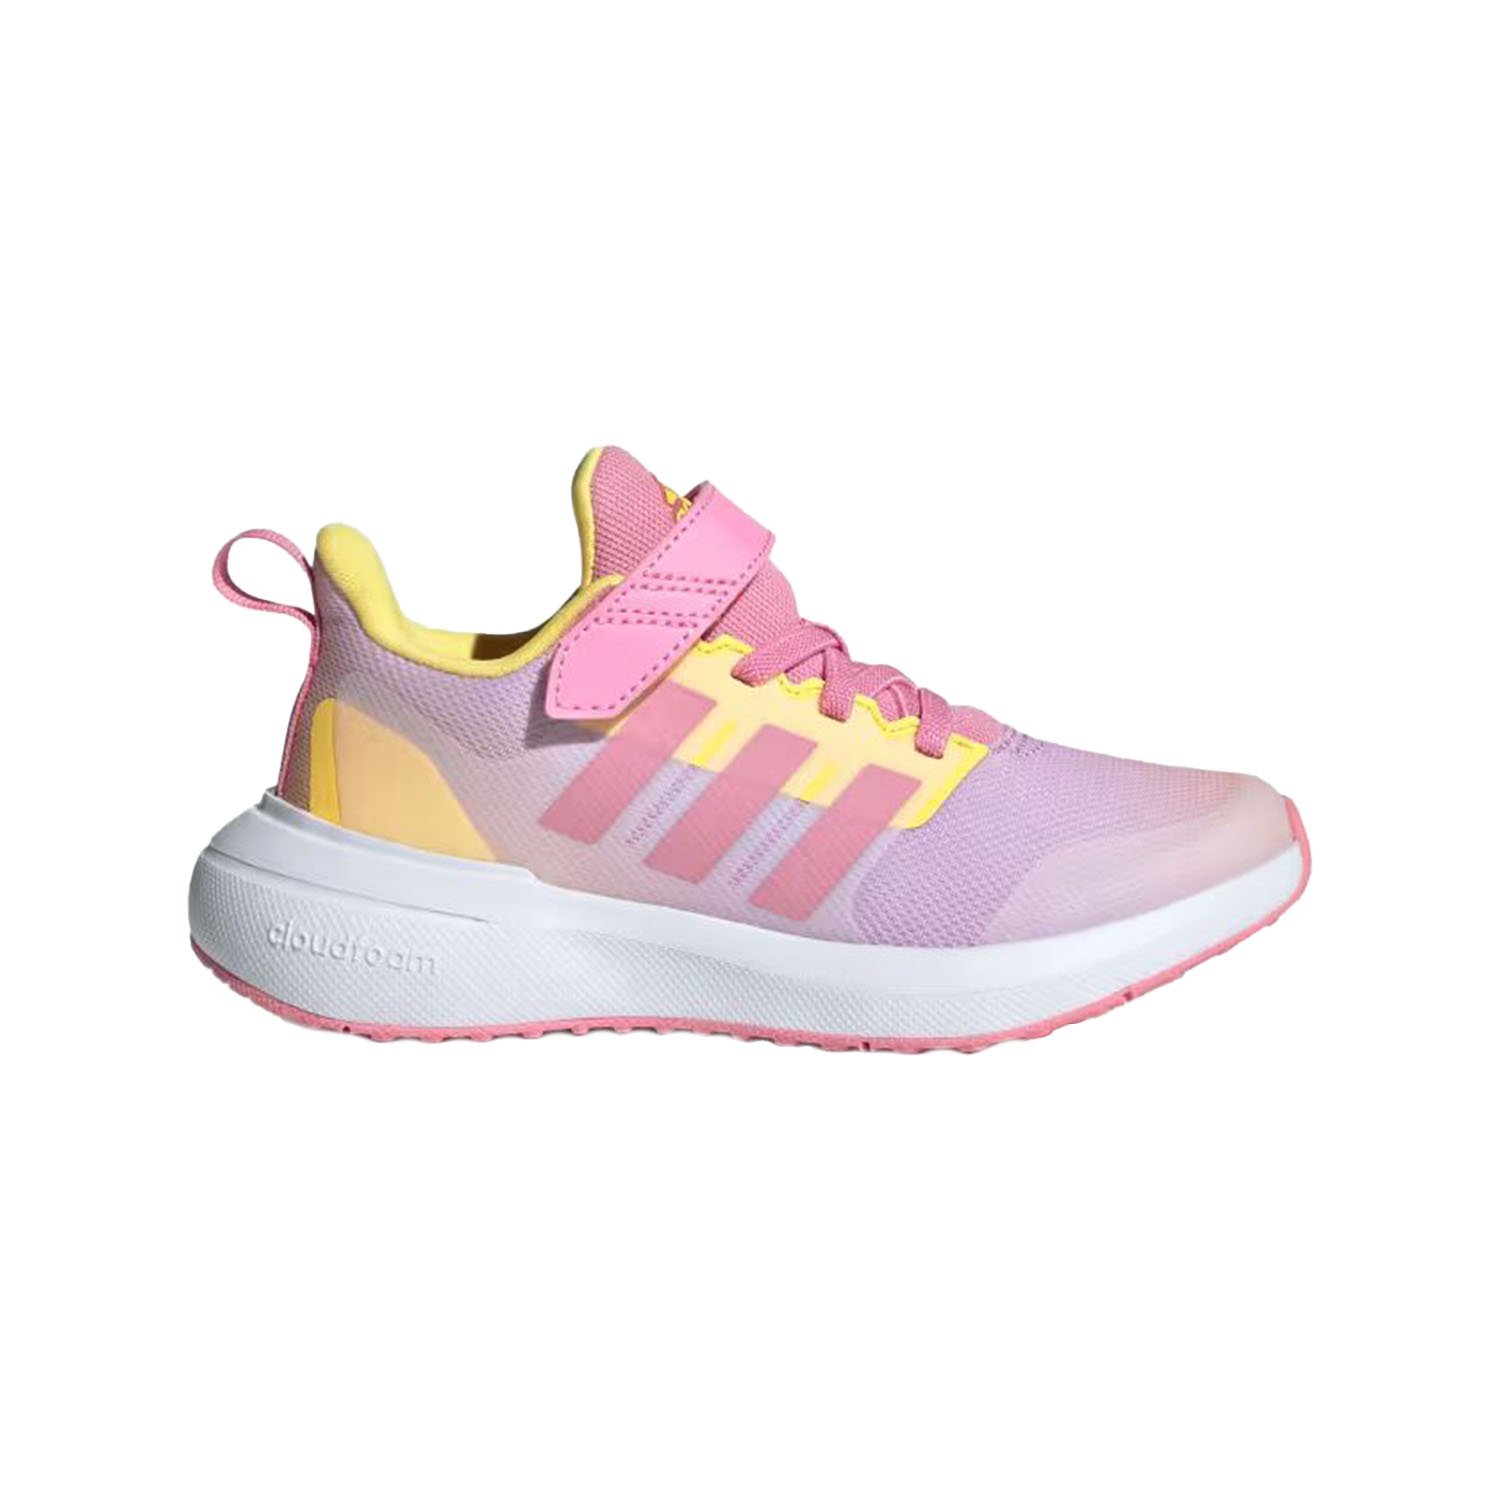 Adidas FortaRun Çocuk Spor Ayakkabı - Renkli - 1